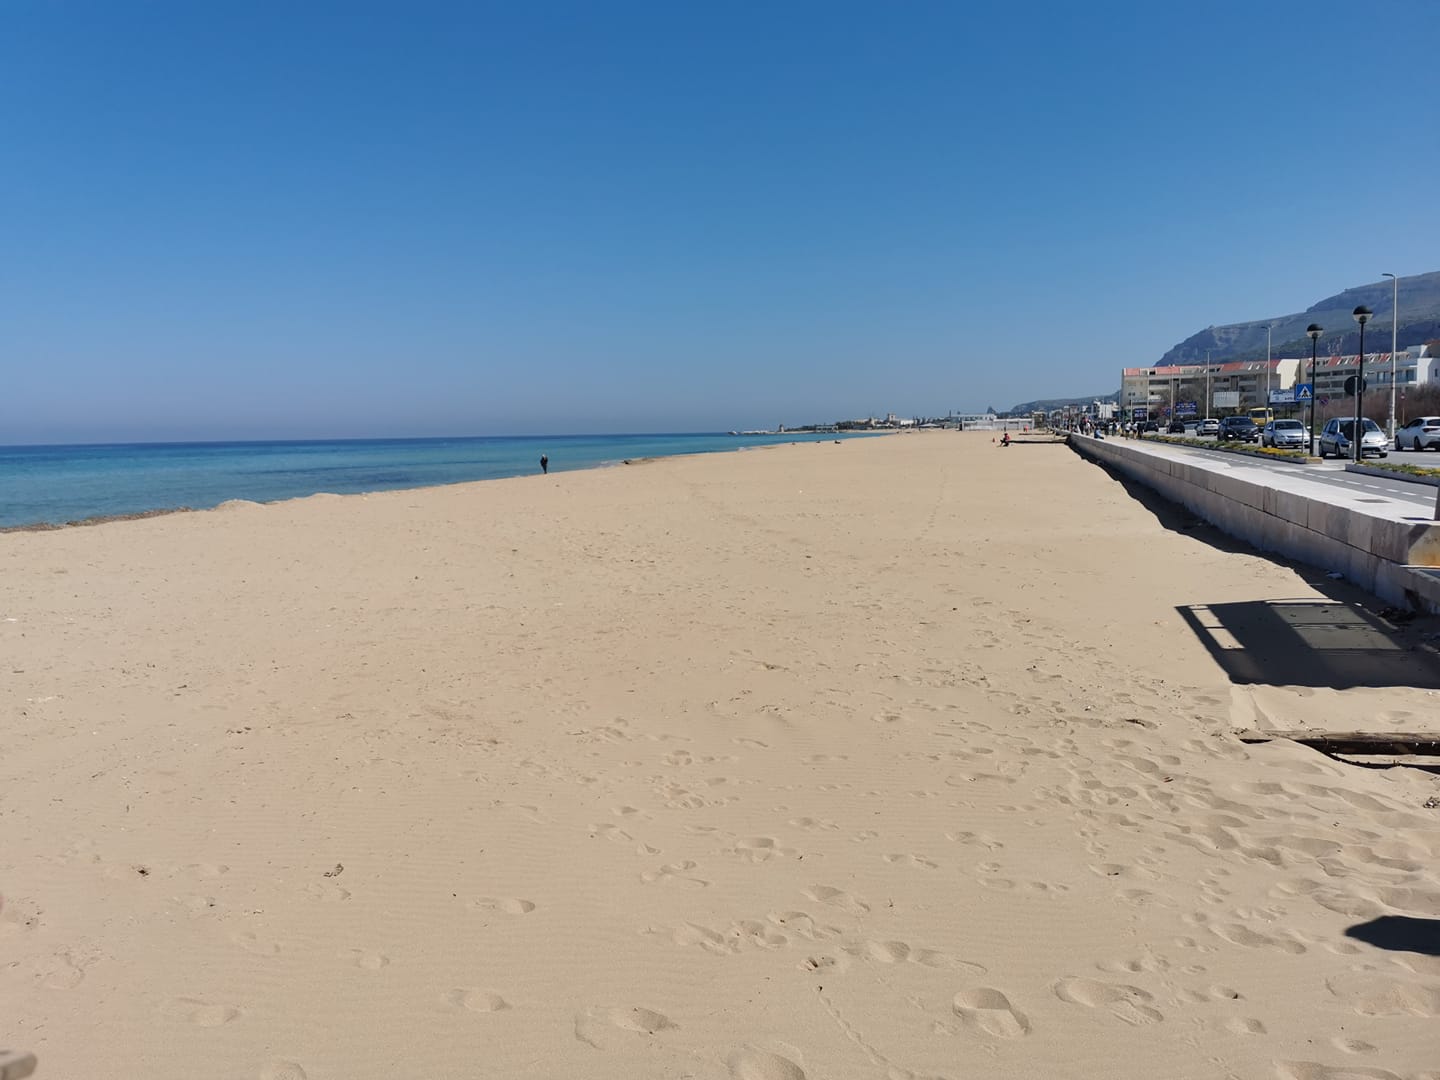 Chiarimenti sul servizio di vigilanza della spiaggia di San Giuliano